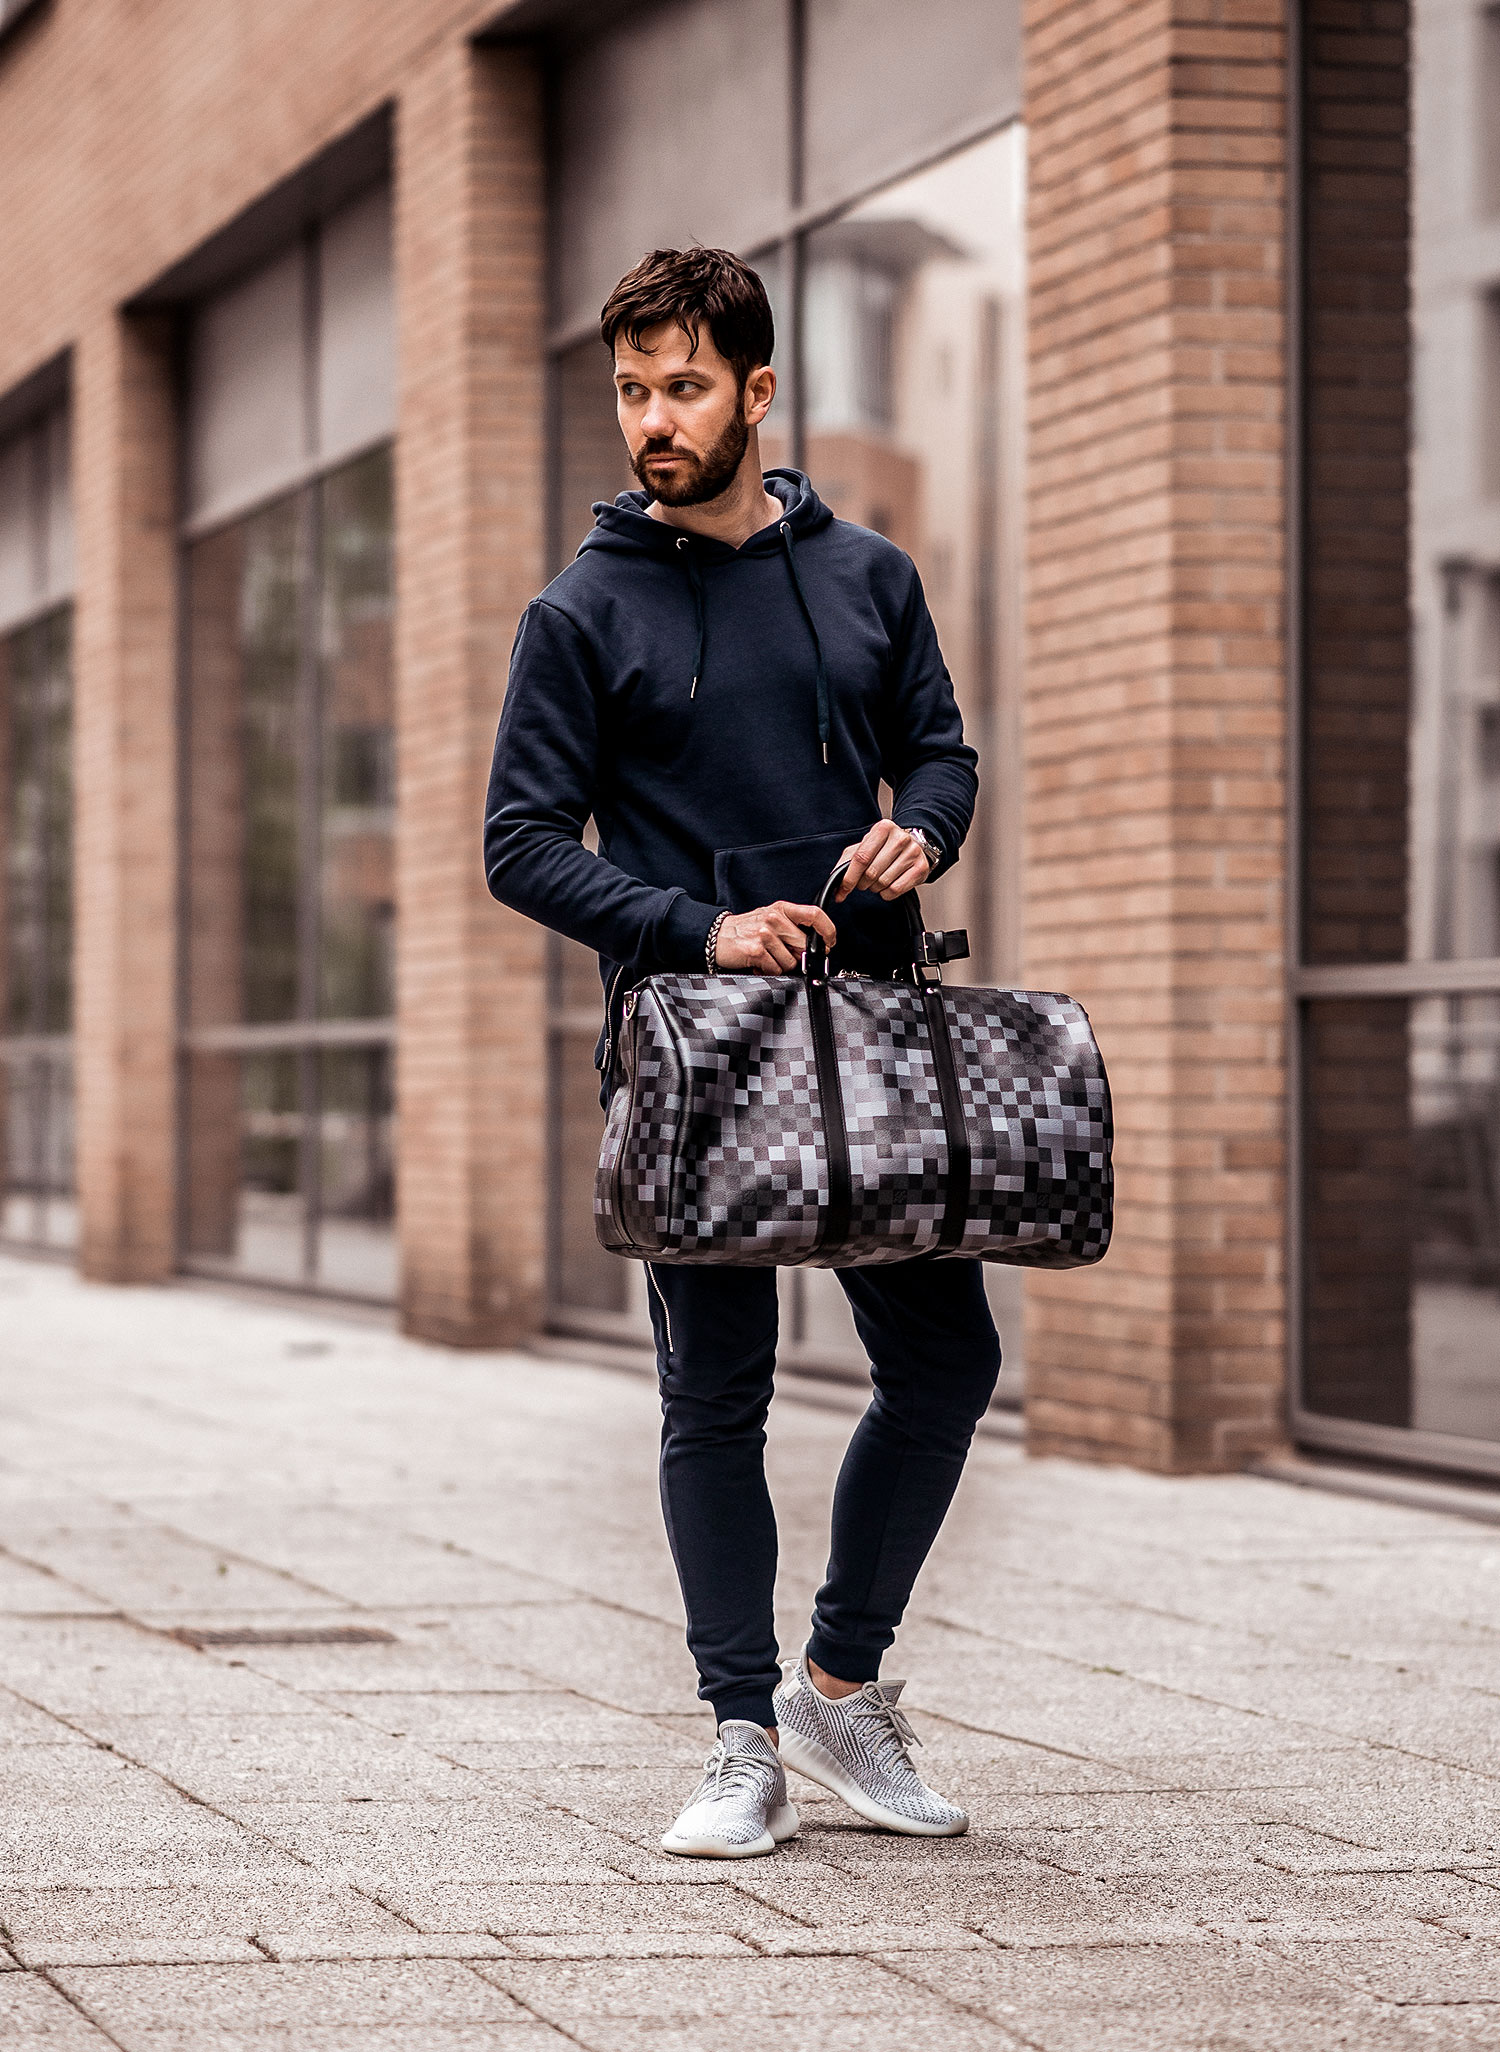 Louis Vuitton Duffle Bag for Men -  UK